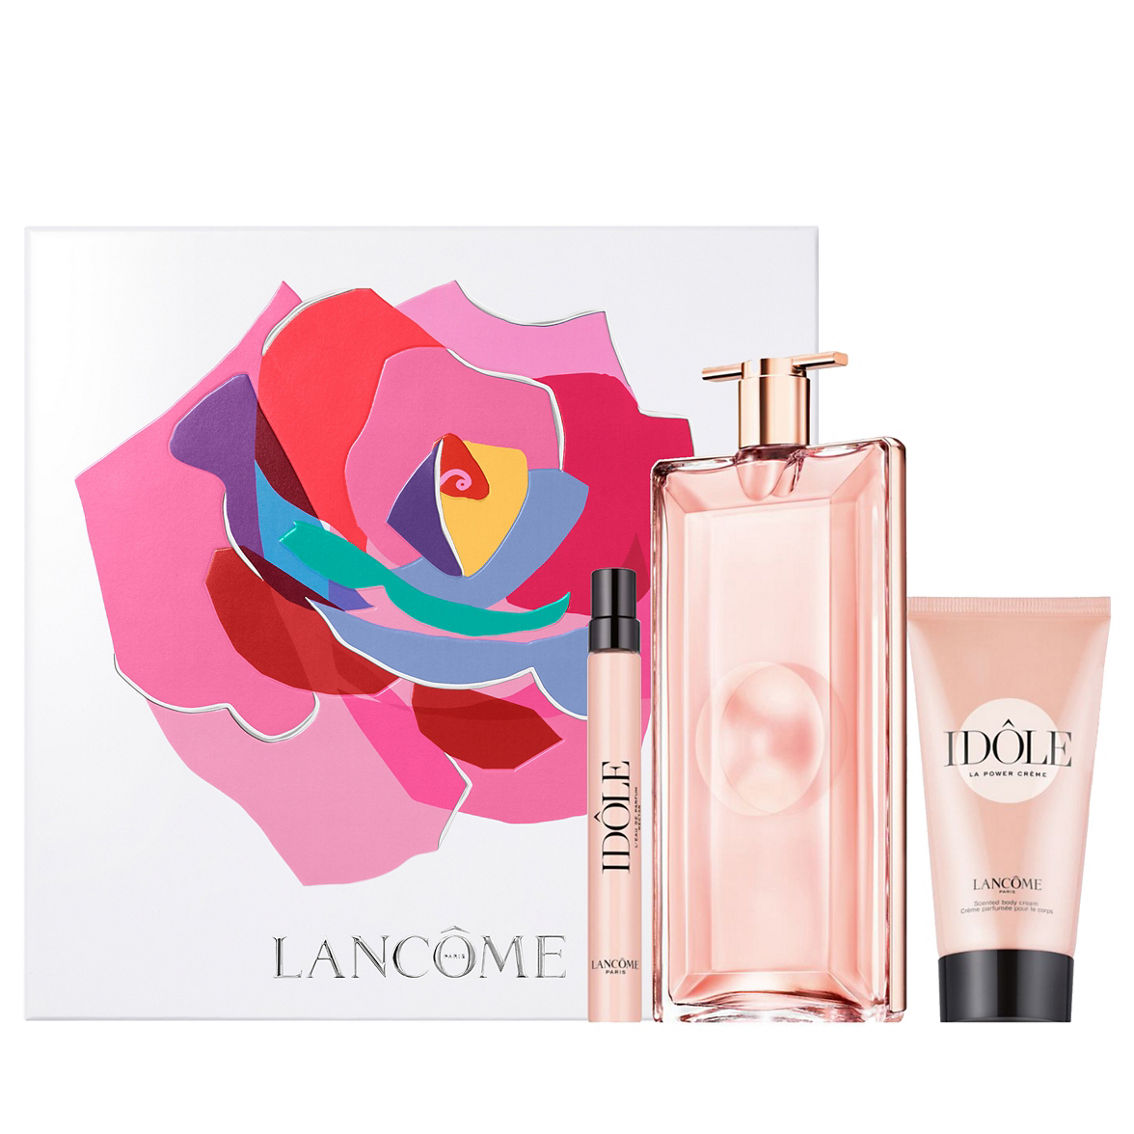 Lancome Idole 100ml Gift Set | Gift Sets | Beauty & Health | Shop The ...